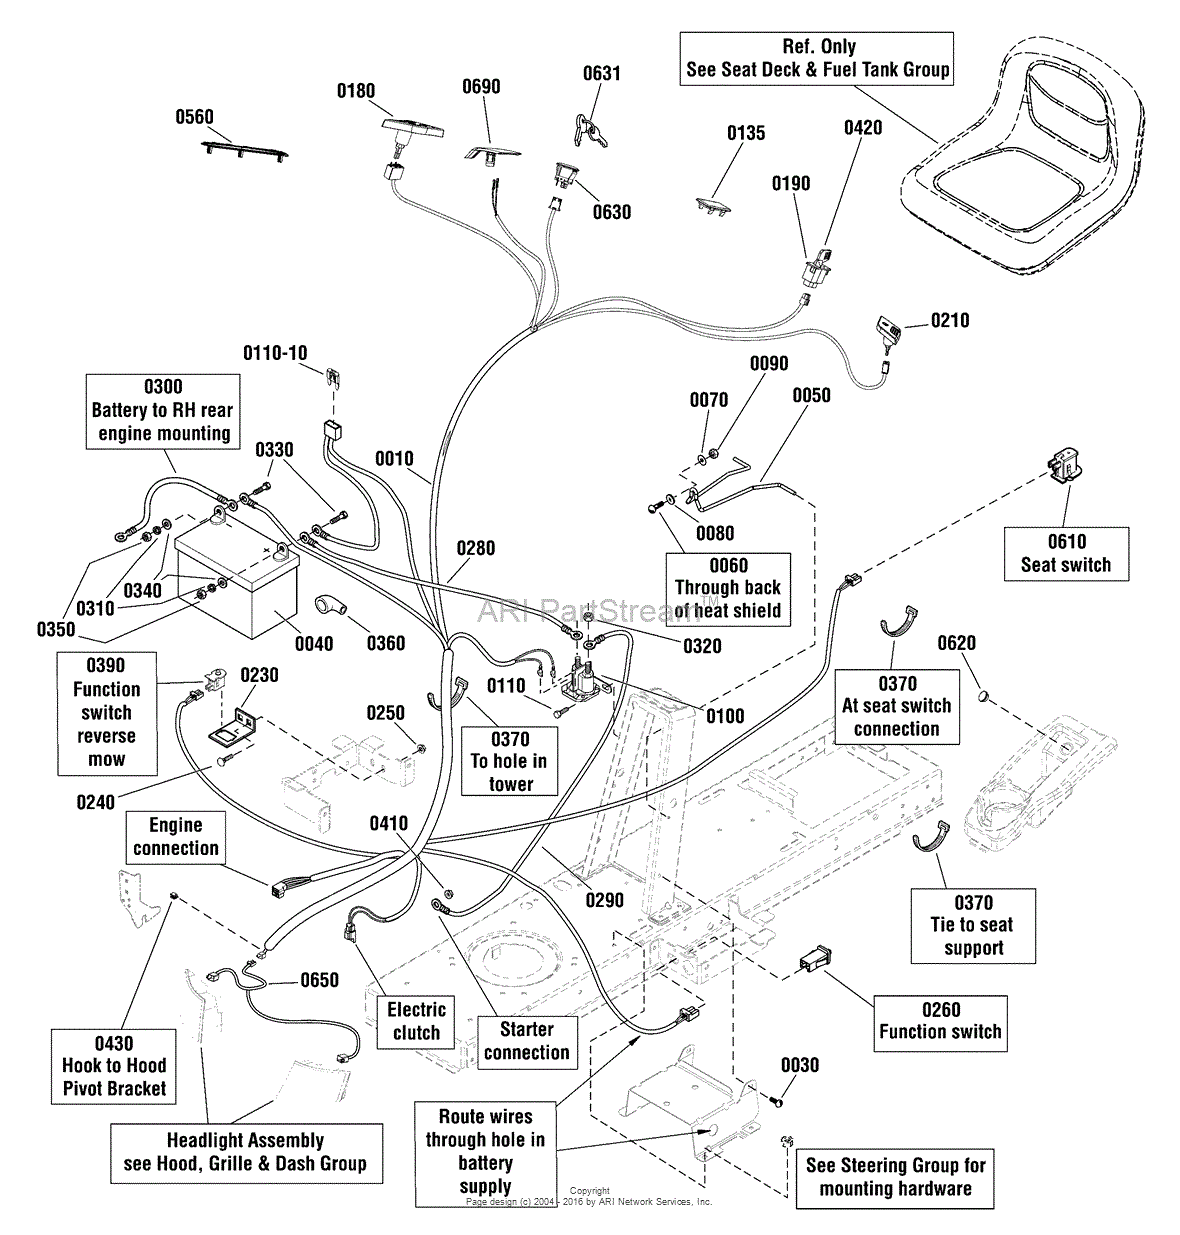 snapper lt200 belt diagram